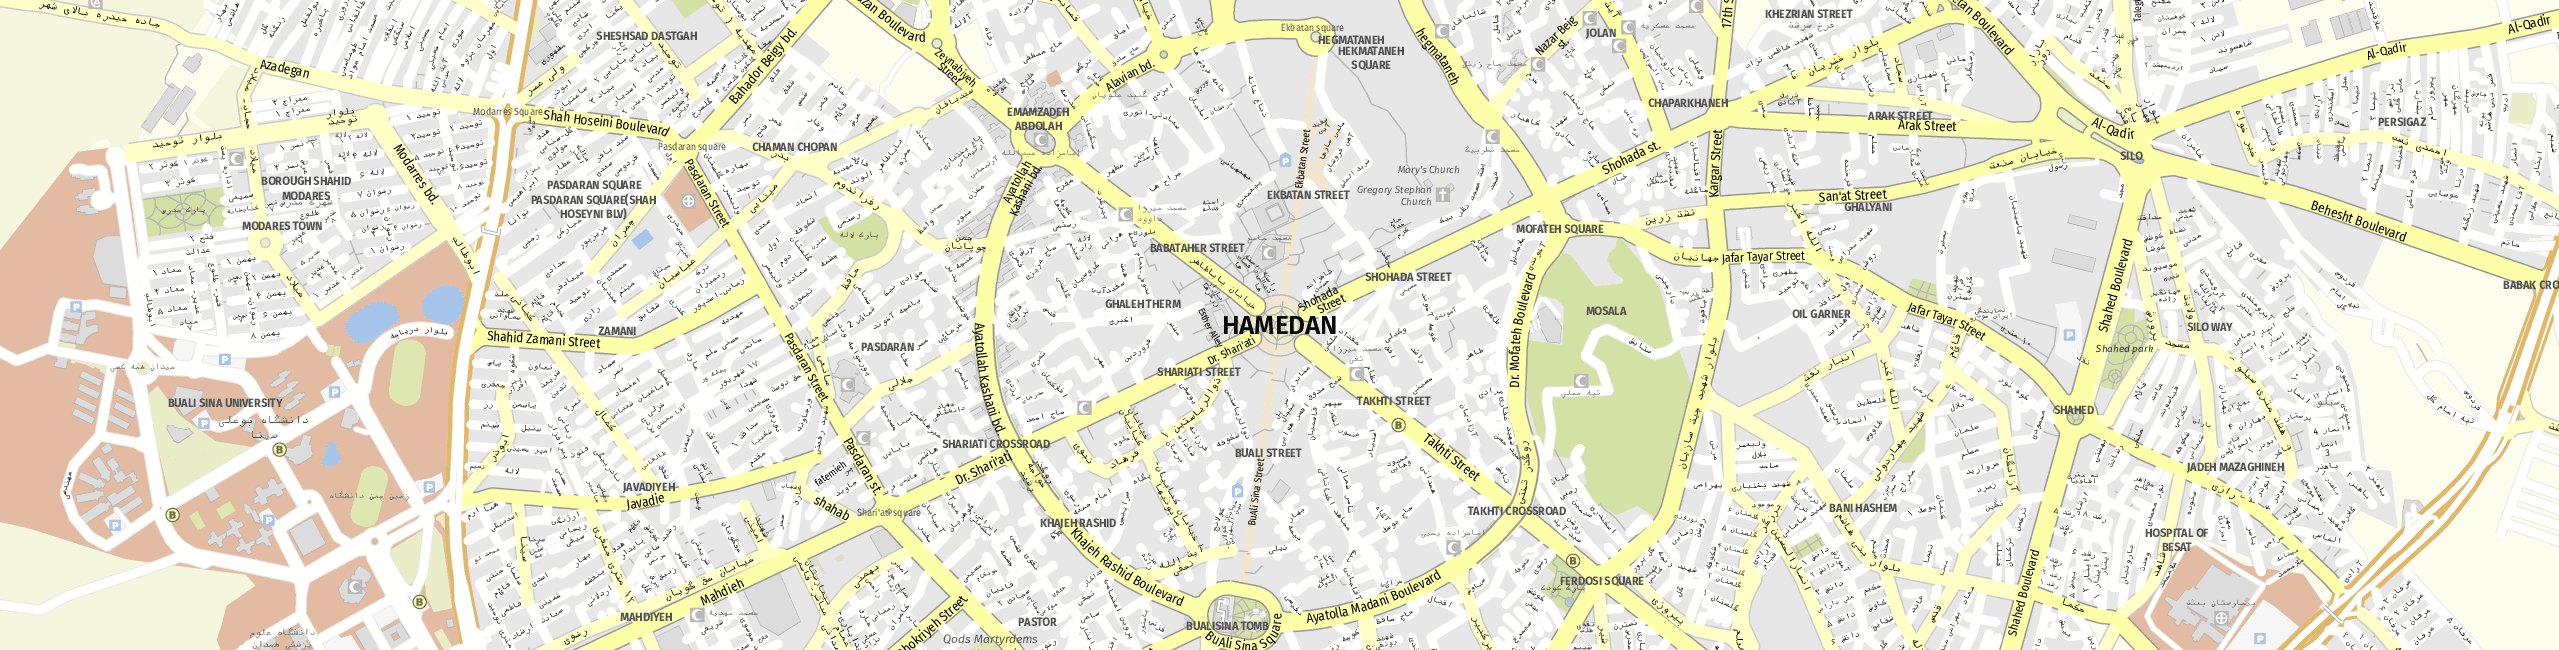 Stadtplan Hamadan zum Downloaden.